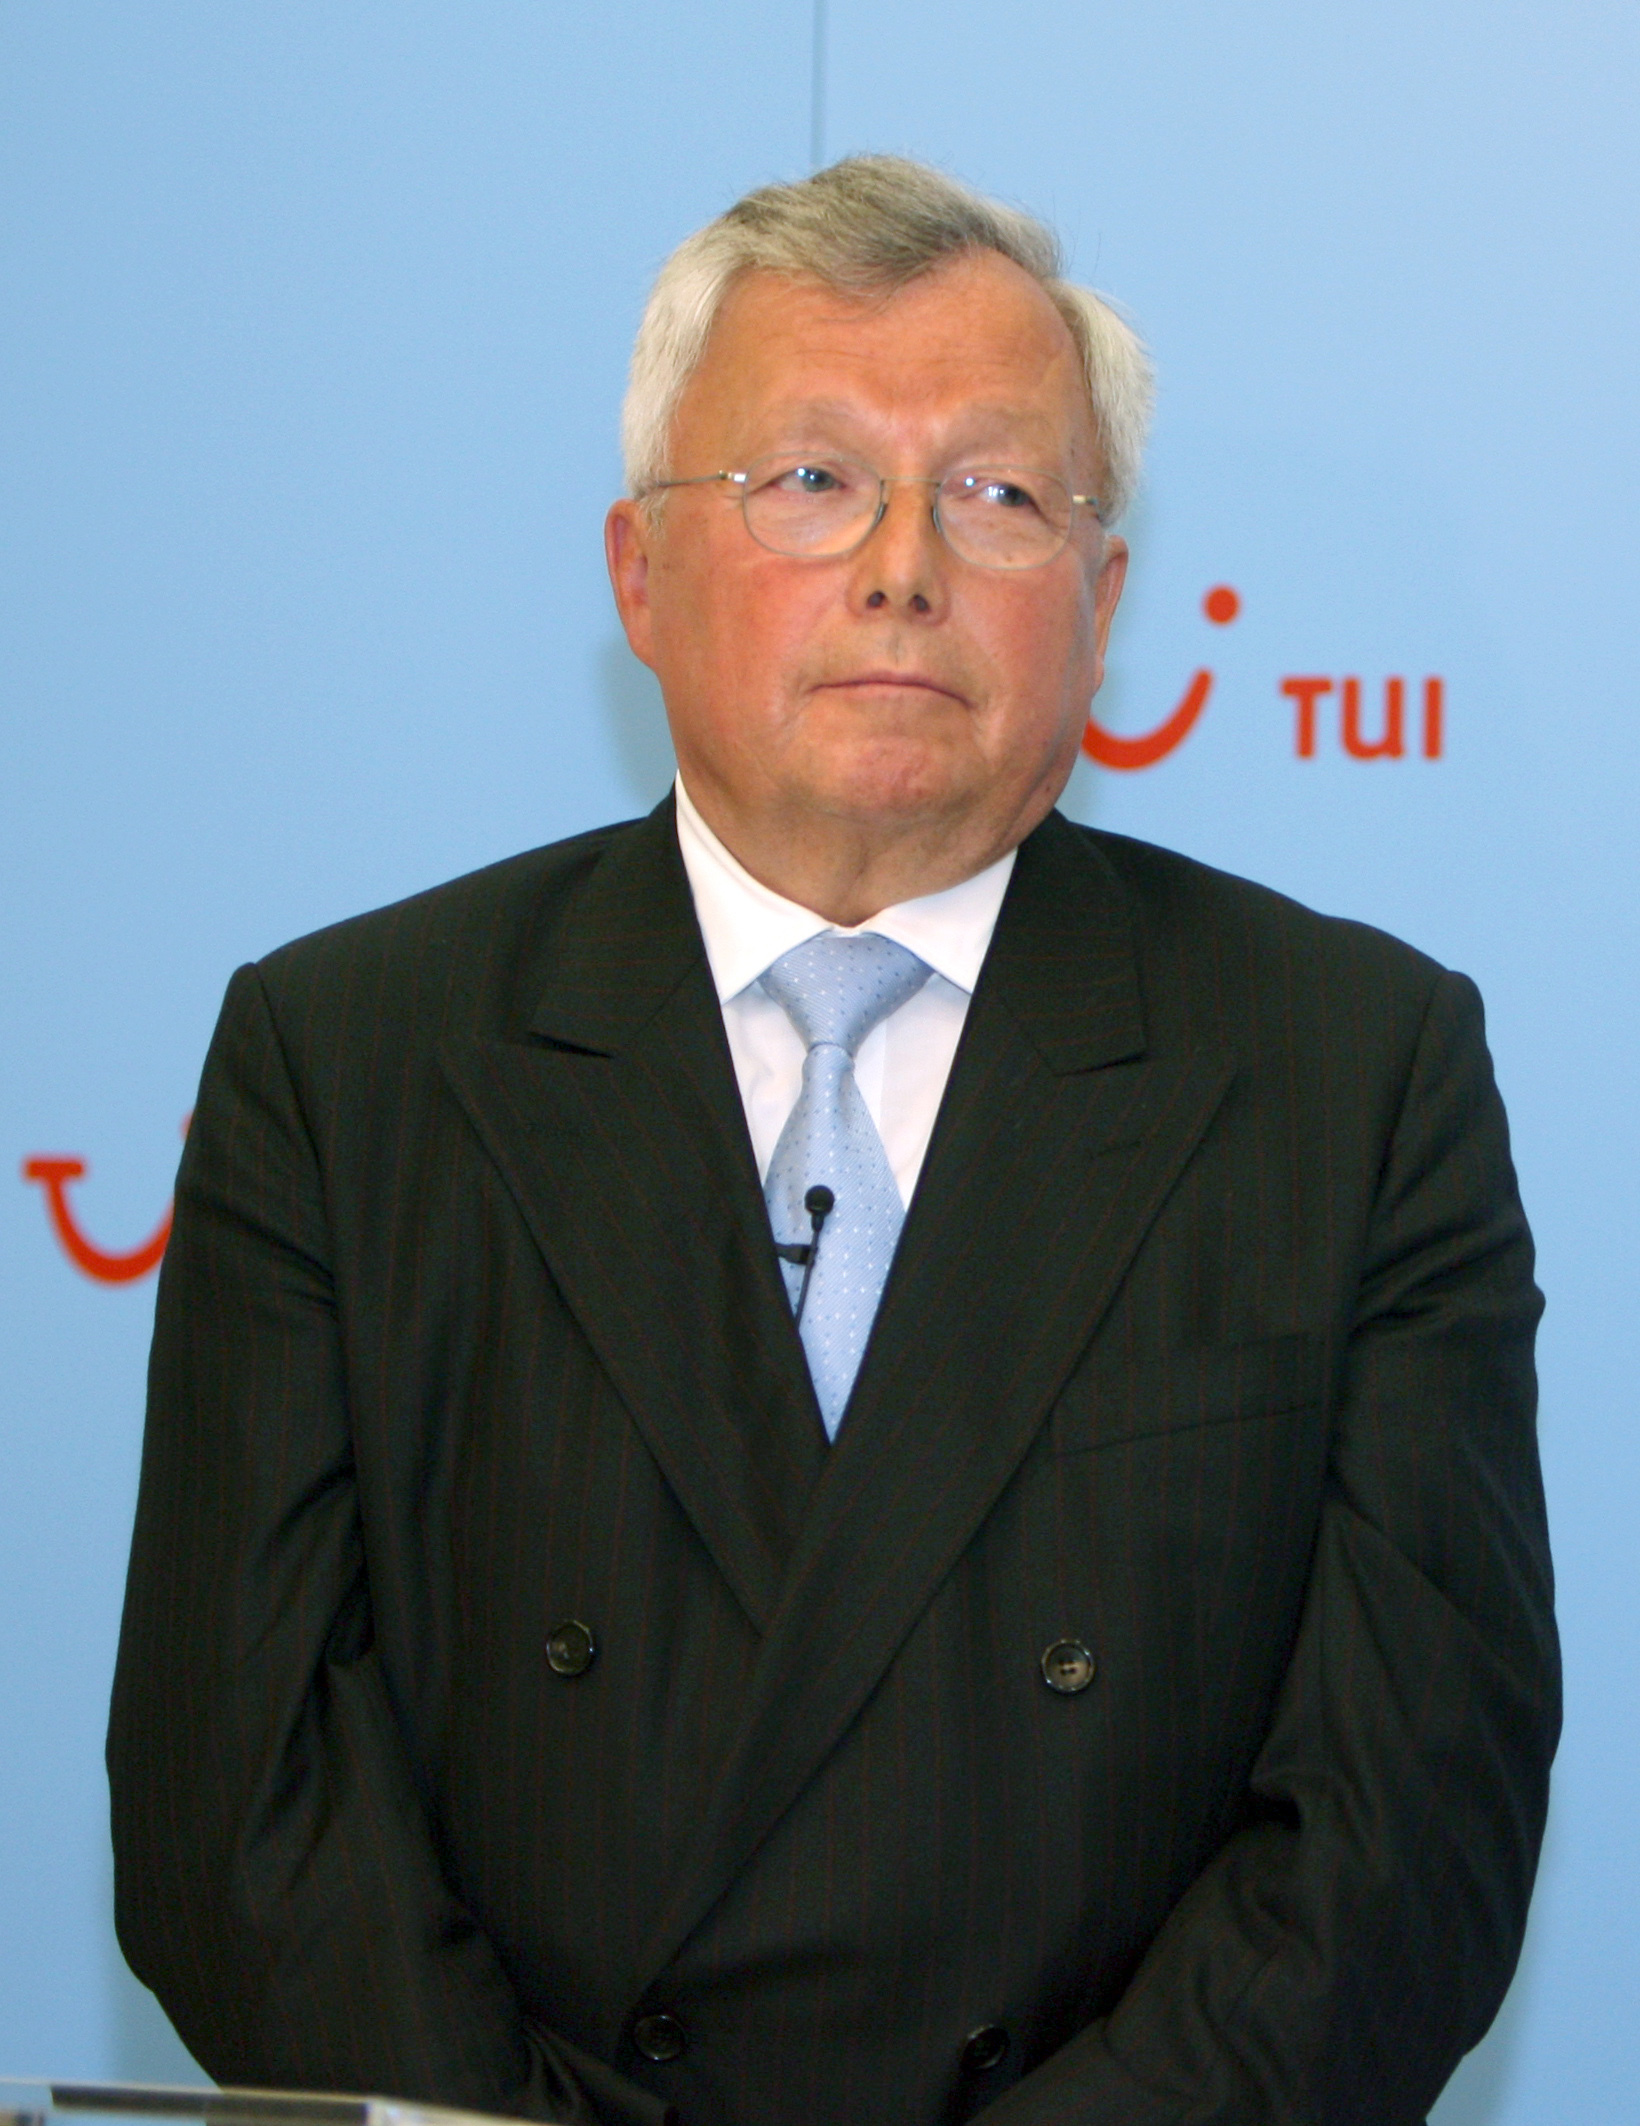 Warburg Bank-Gesellschafter Christian Olearius blickt während einer Pressekonferenz in Richtung der Medienvertreter. (Archivbild von 2008)